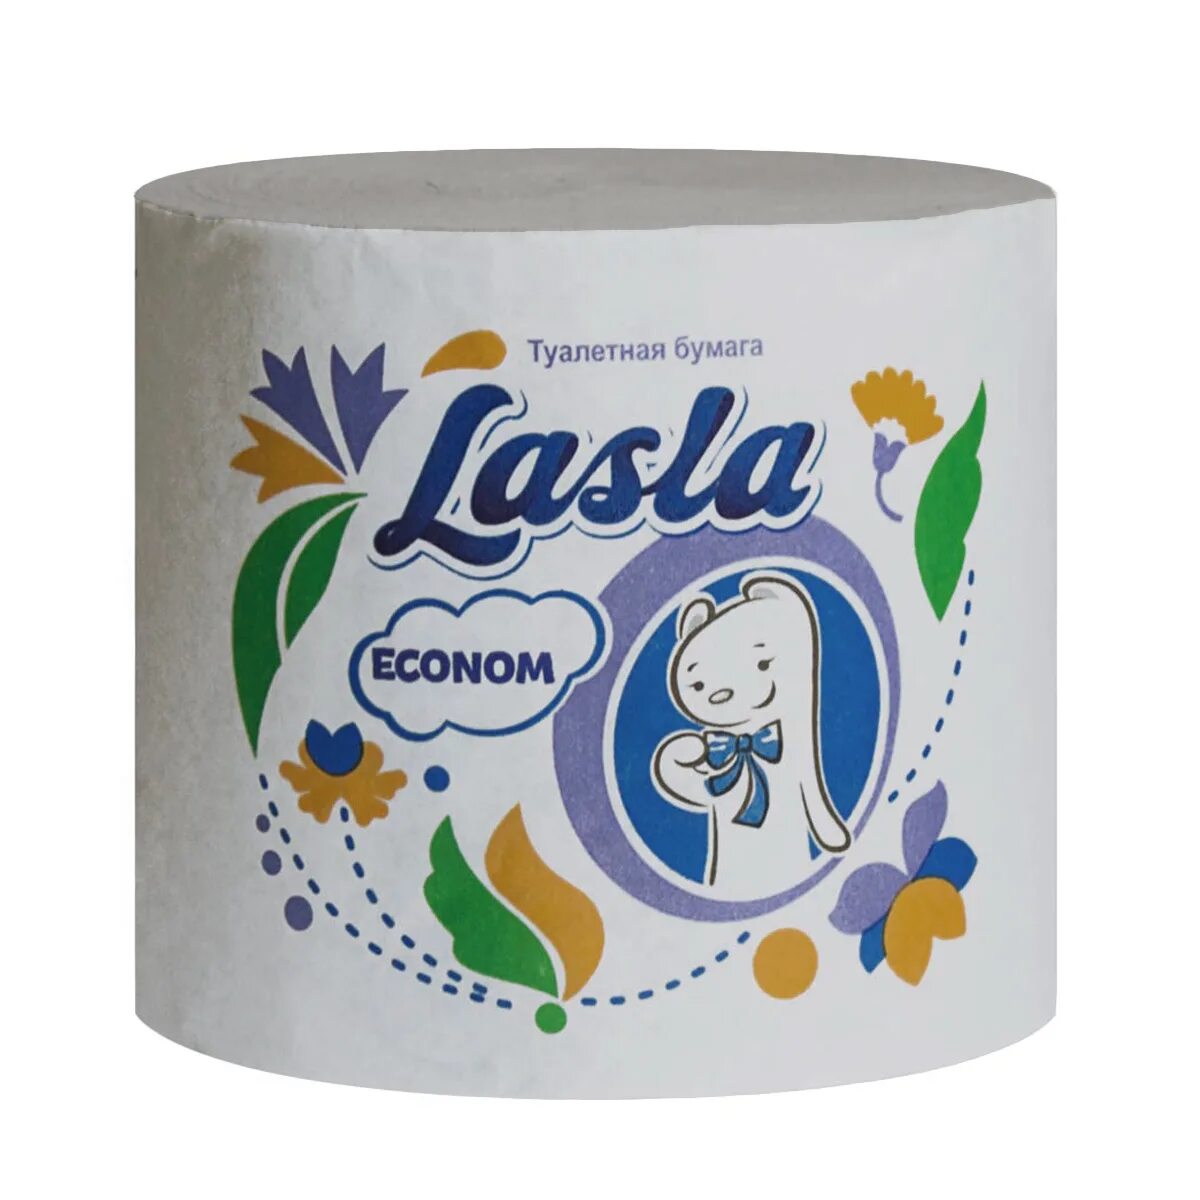 Туалетная бумага оптом от производителя. Туалетная бумага Lasla. Туалетная бумага Lasla Econom без втулки м-45. Туалетная бумага Lasla Econom м-45 33 м. Туалетная бумага Ласла эконом.